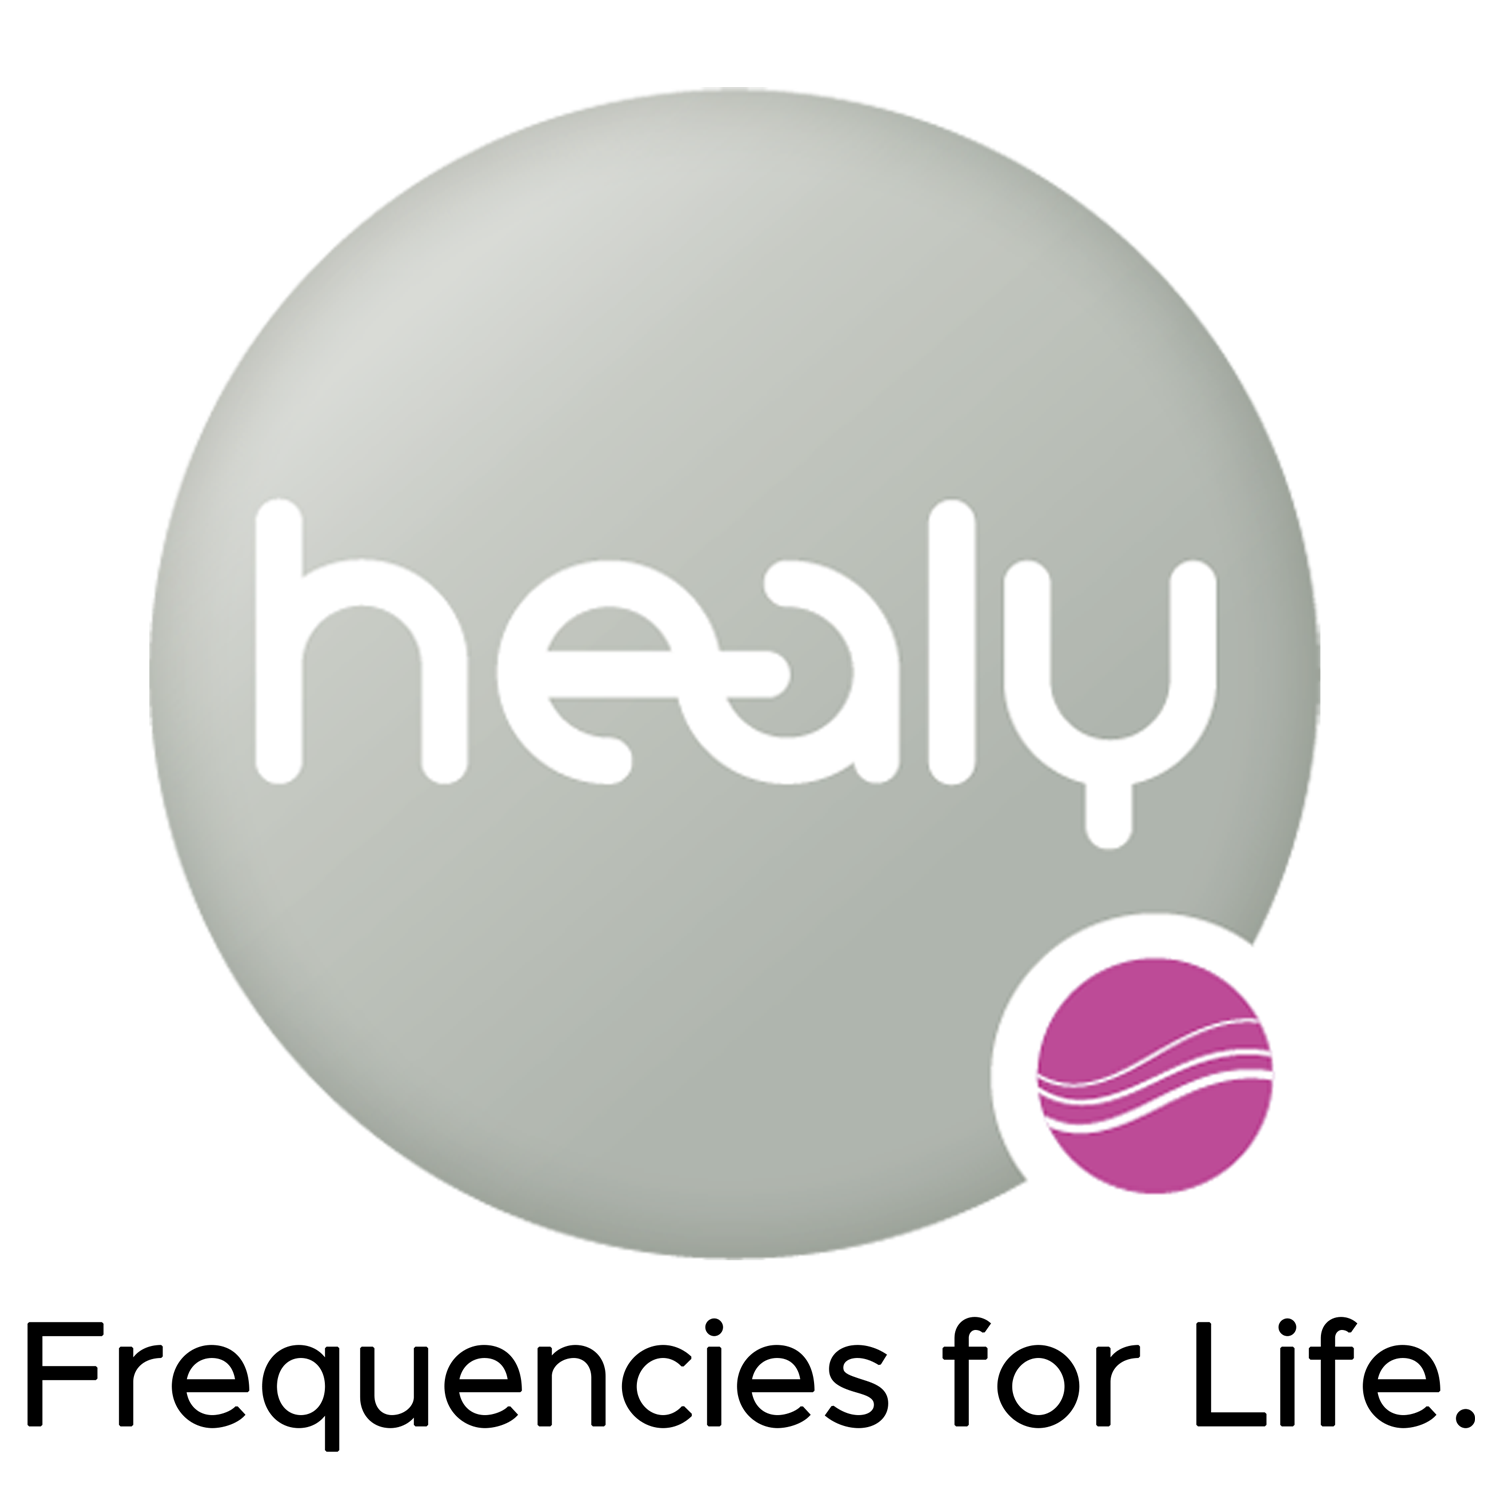 Healy Logo